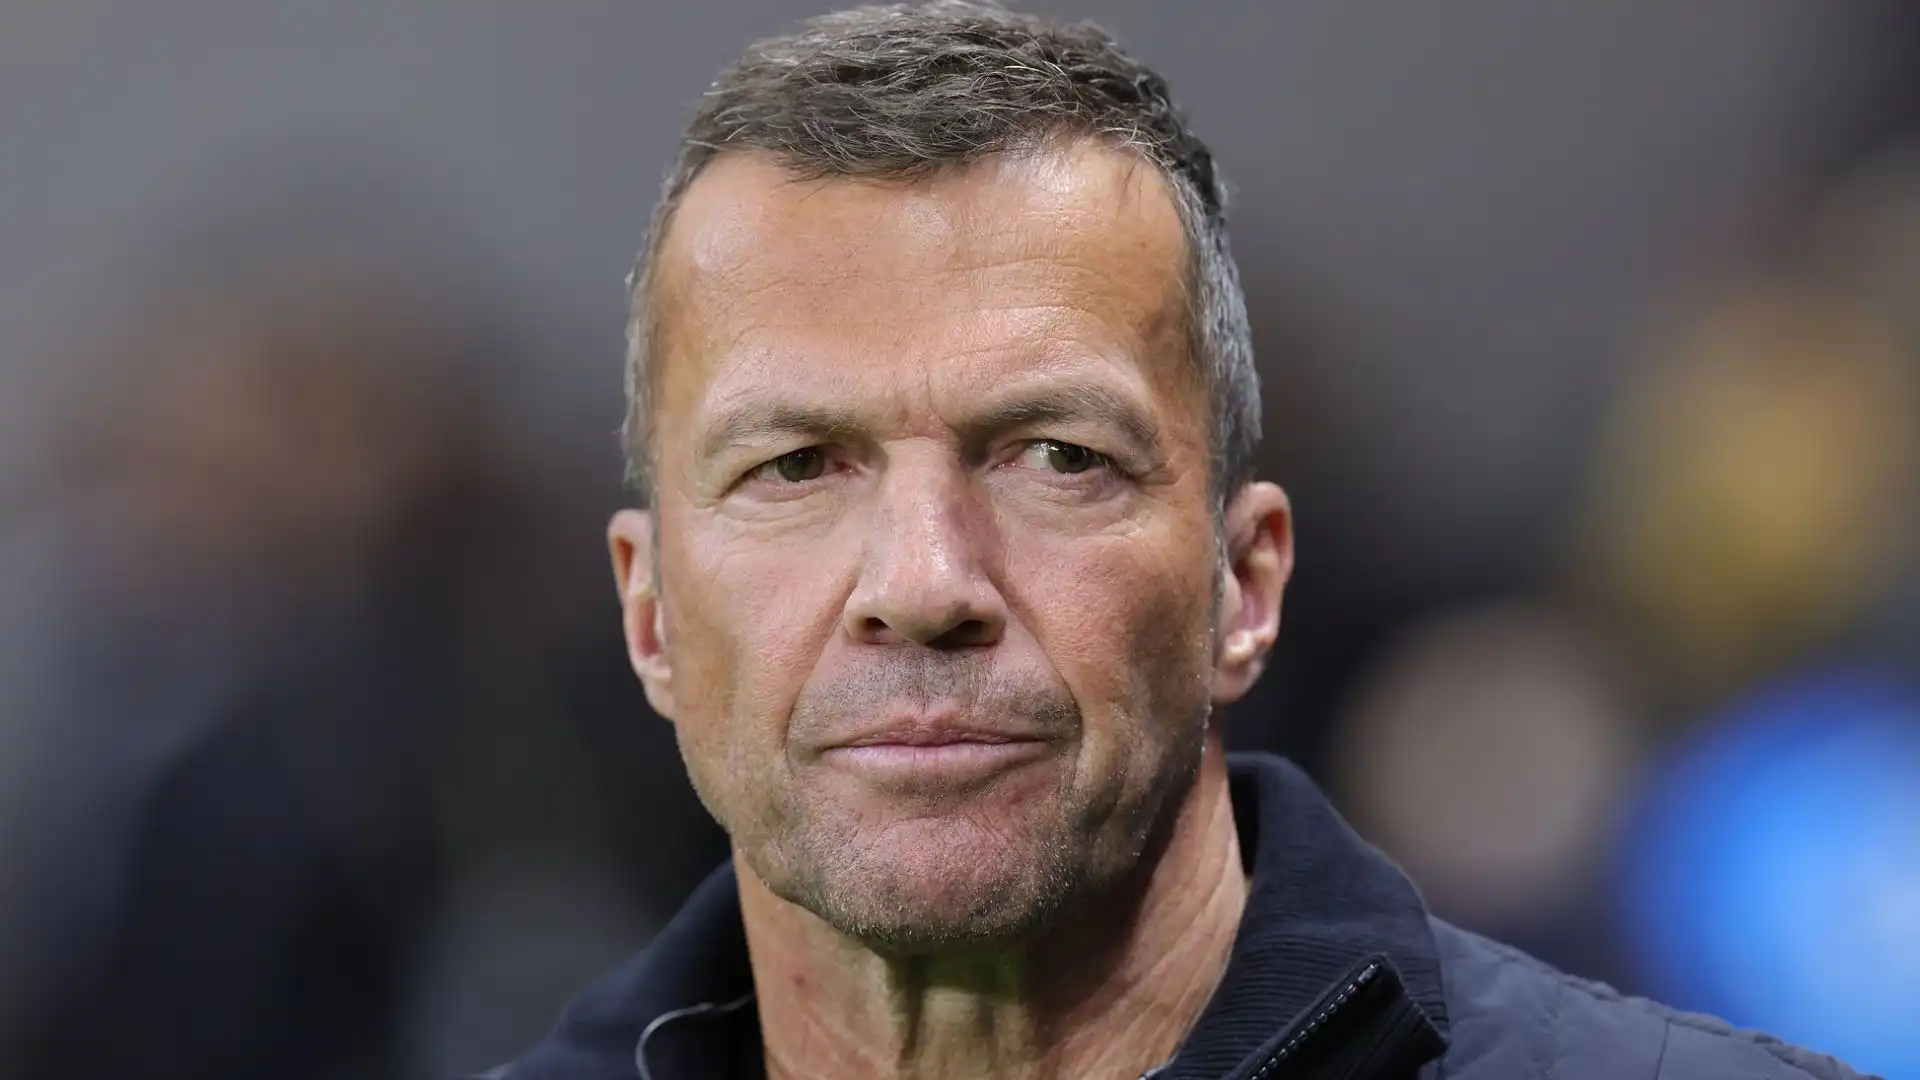 Strunz suggerisce diversi candidati per un successore a breve termine fino alla fine della stagione, tra cui la leggenda Lothar Matthäus